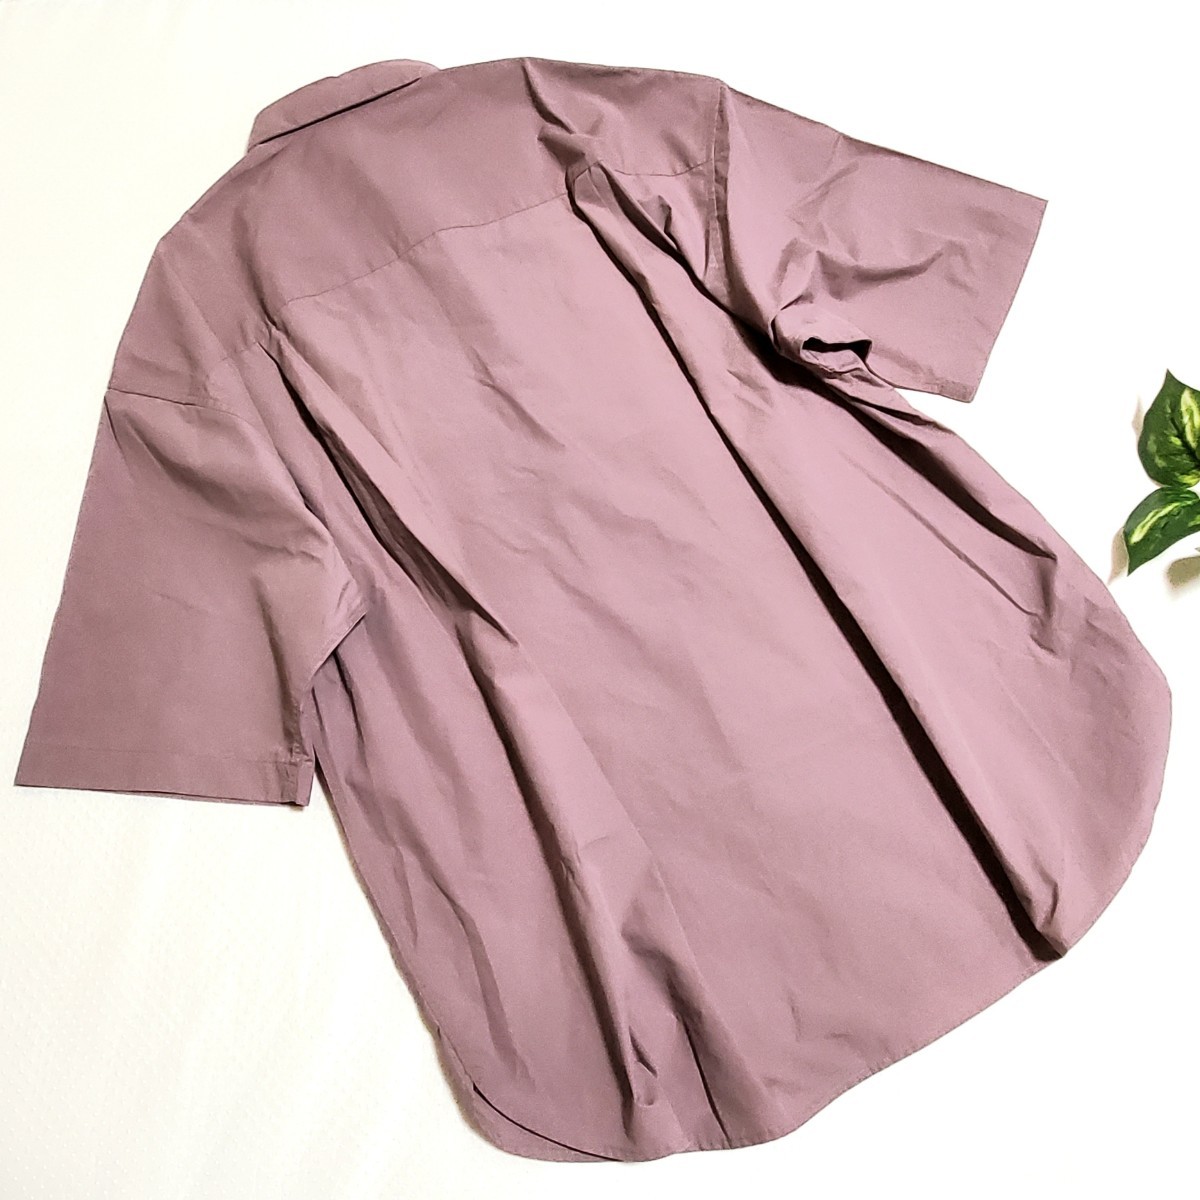 GU ジーユー ブロードオーバーサイズシャツ 5分袖 メンズ 半袖シャツ Sサイズ ワイン くすみピンク